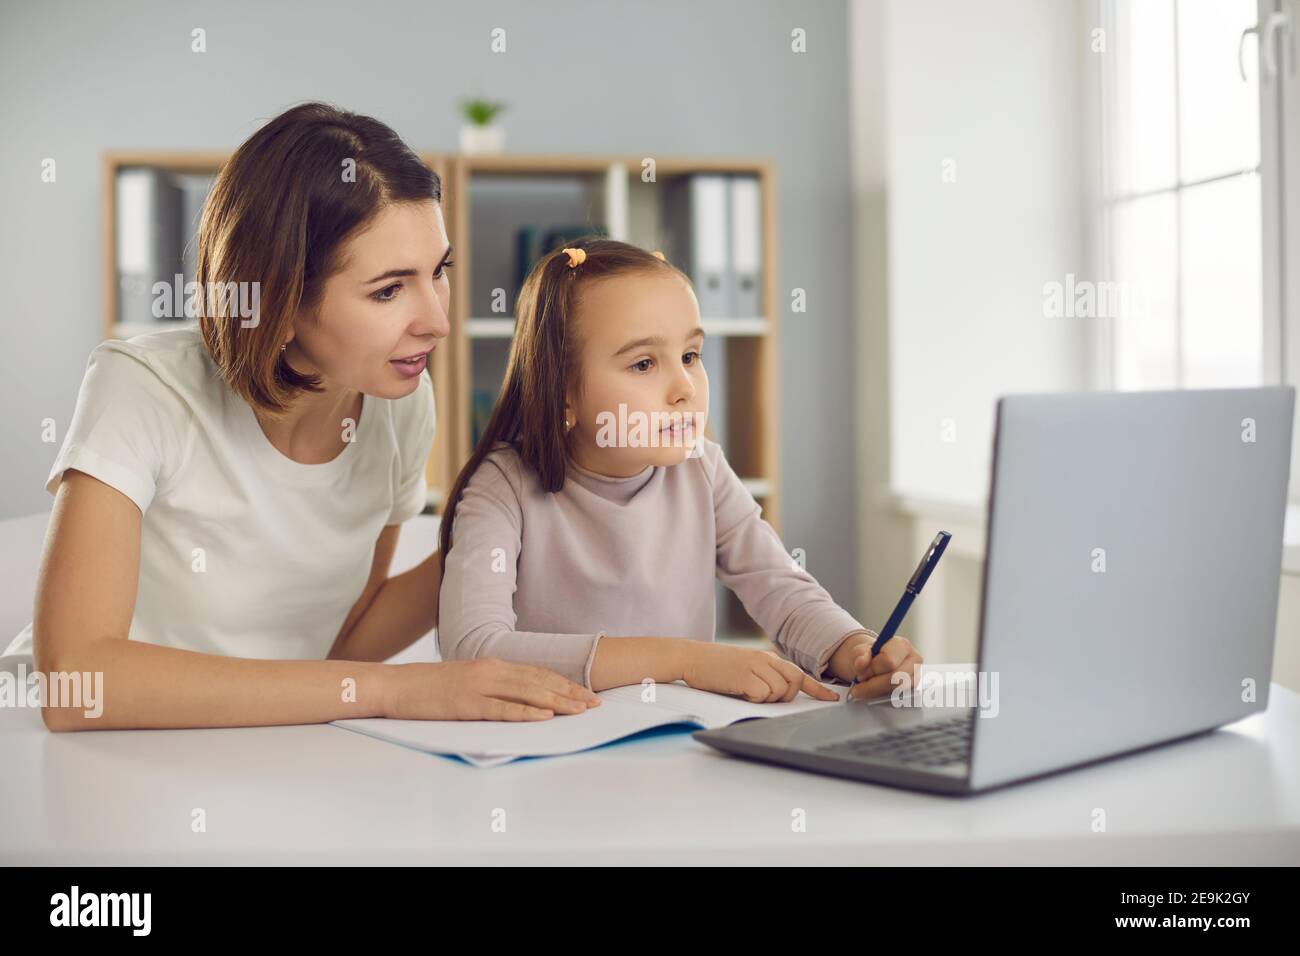 Mutter und kleines Mädchen Tochter sitzen zusammen und machen Hausaufgaben Oder Aufgaben während des Online-Unterrichts Stockfoto